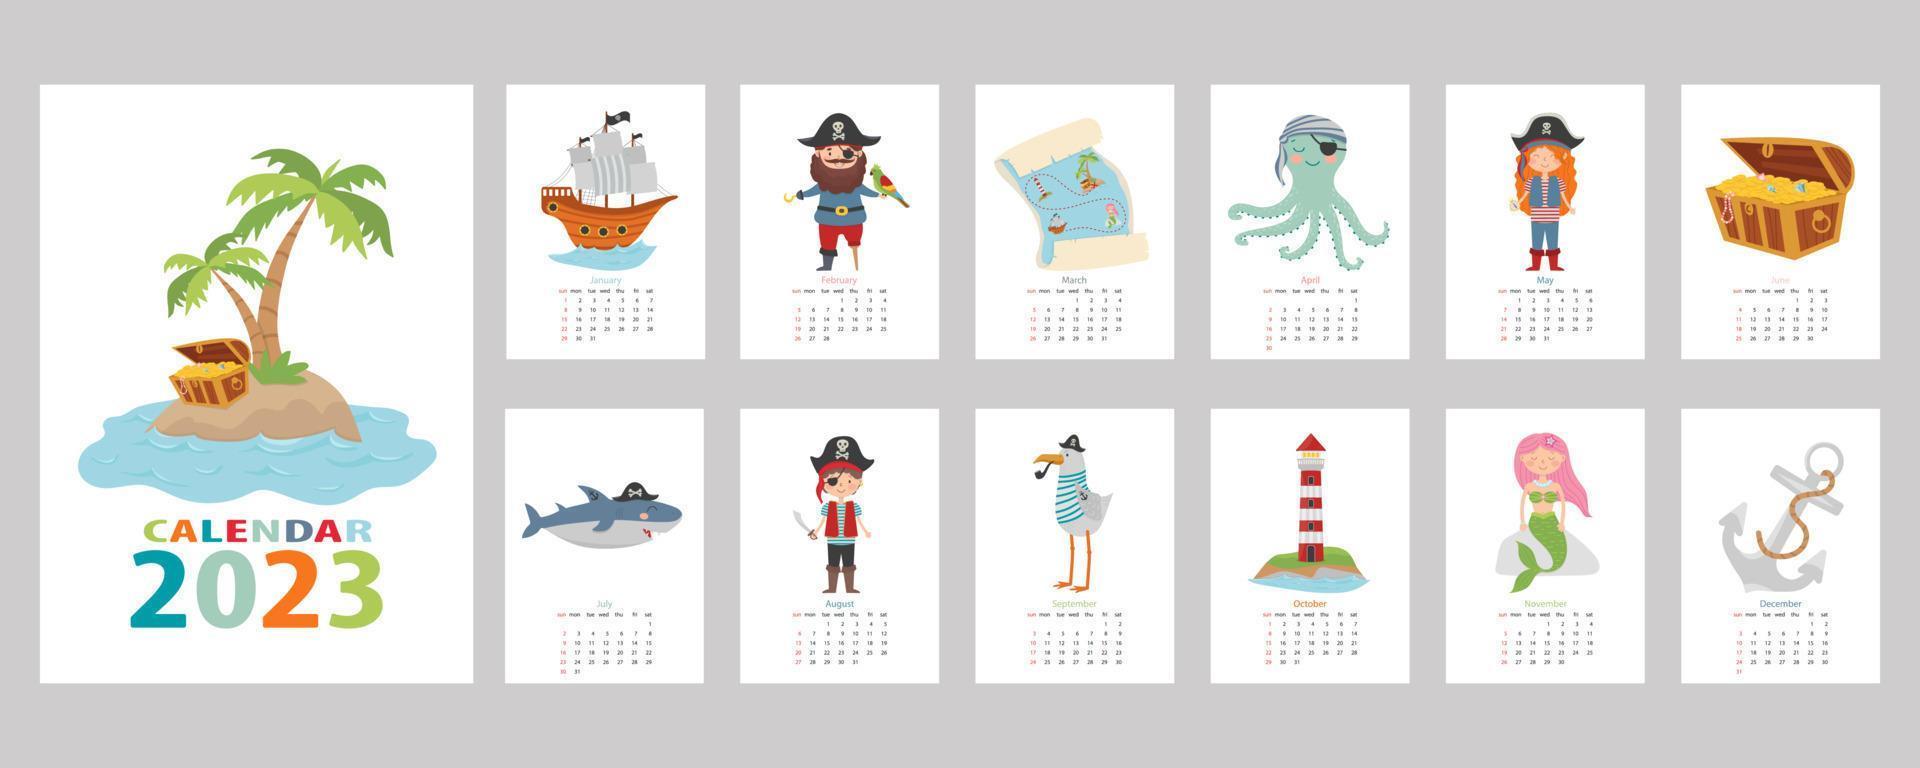 calendário 2023. calendário infantil colorido com desenho pirata. pirata, ilha do tesouro, tubarão, polvo, gaivota, sereia, navio e farol. vetor